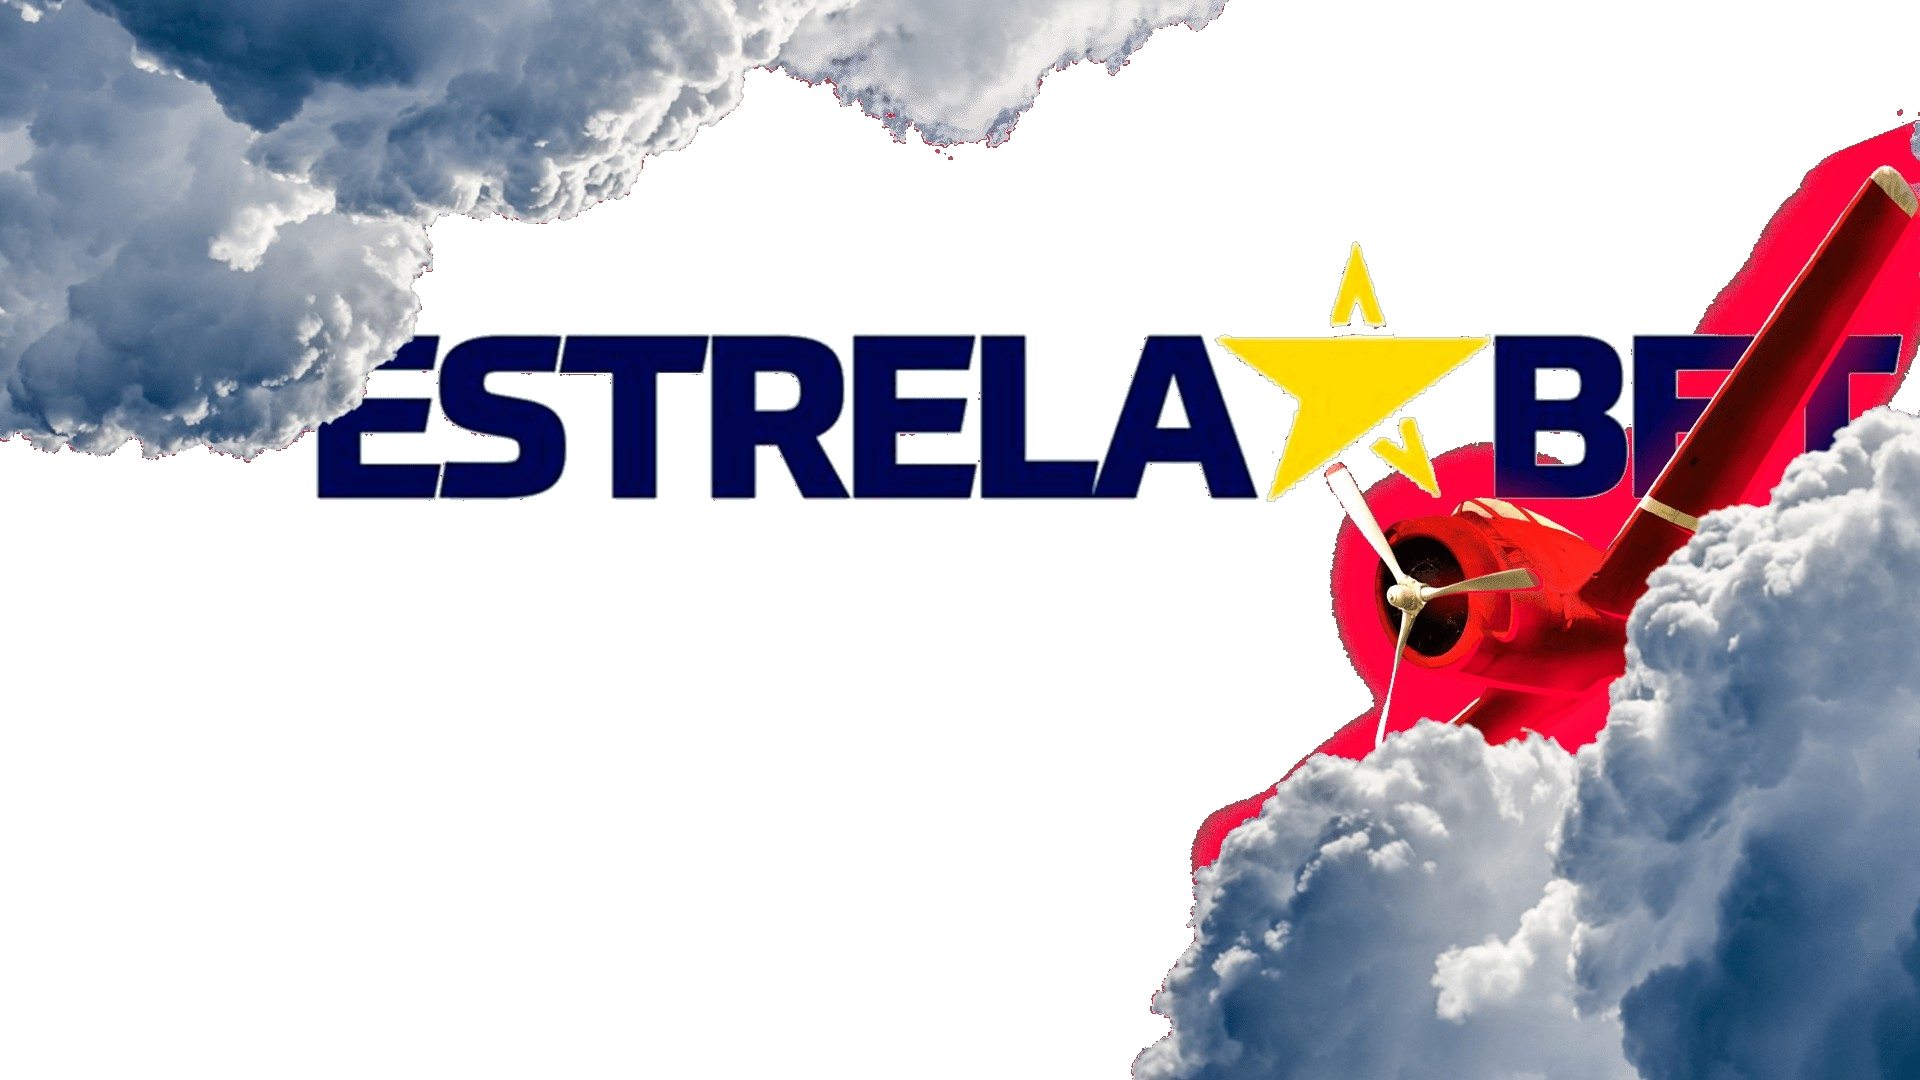 EstrelaBet - Reclame Aqui